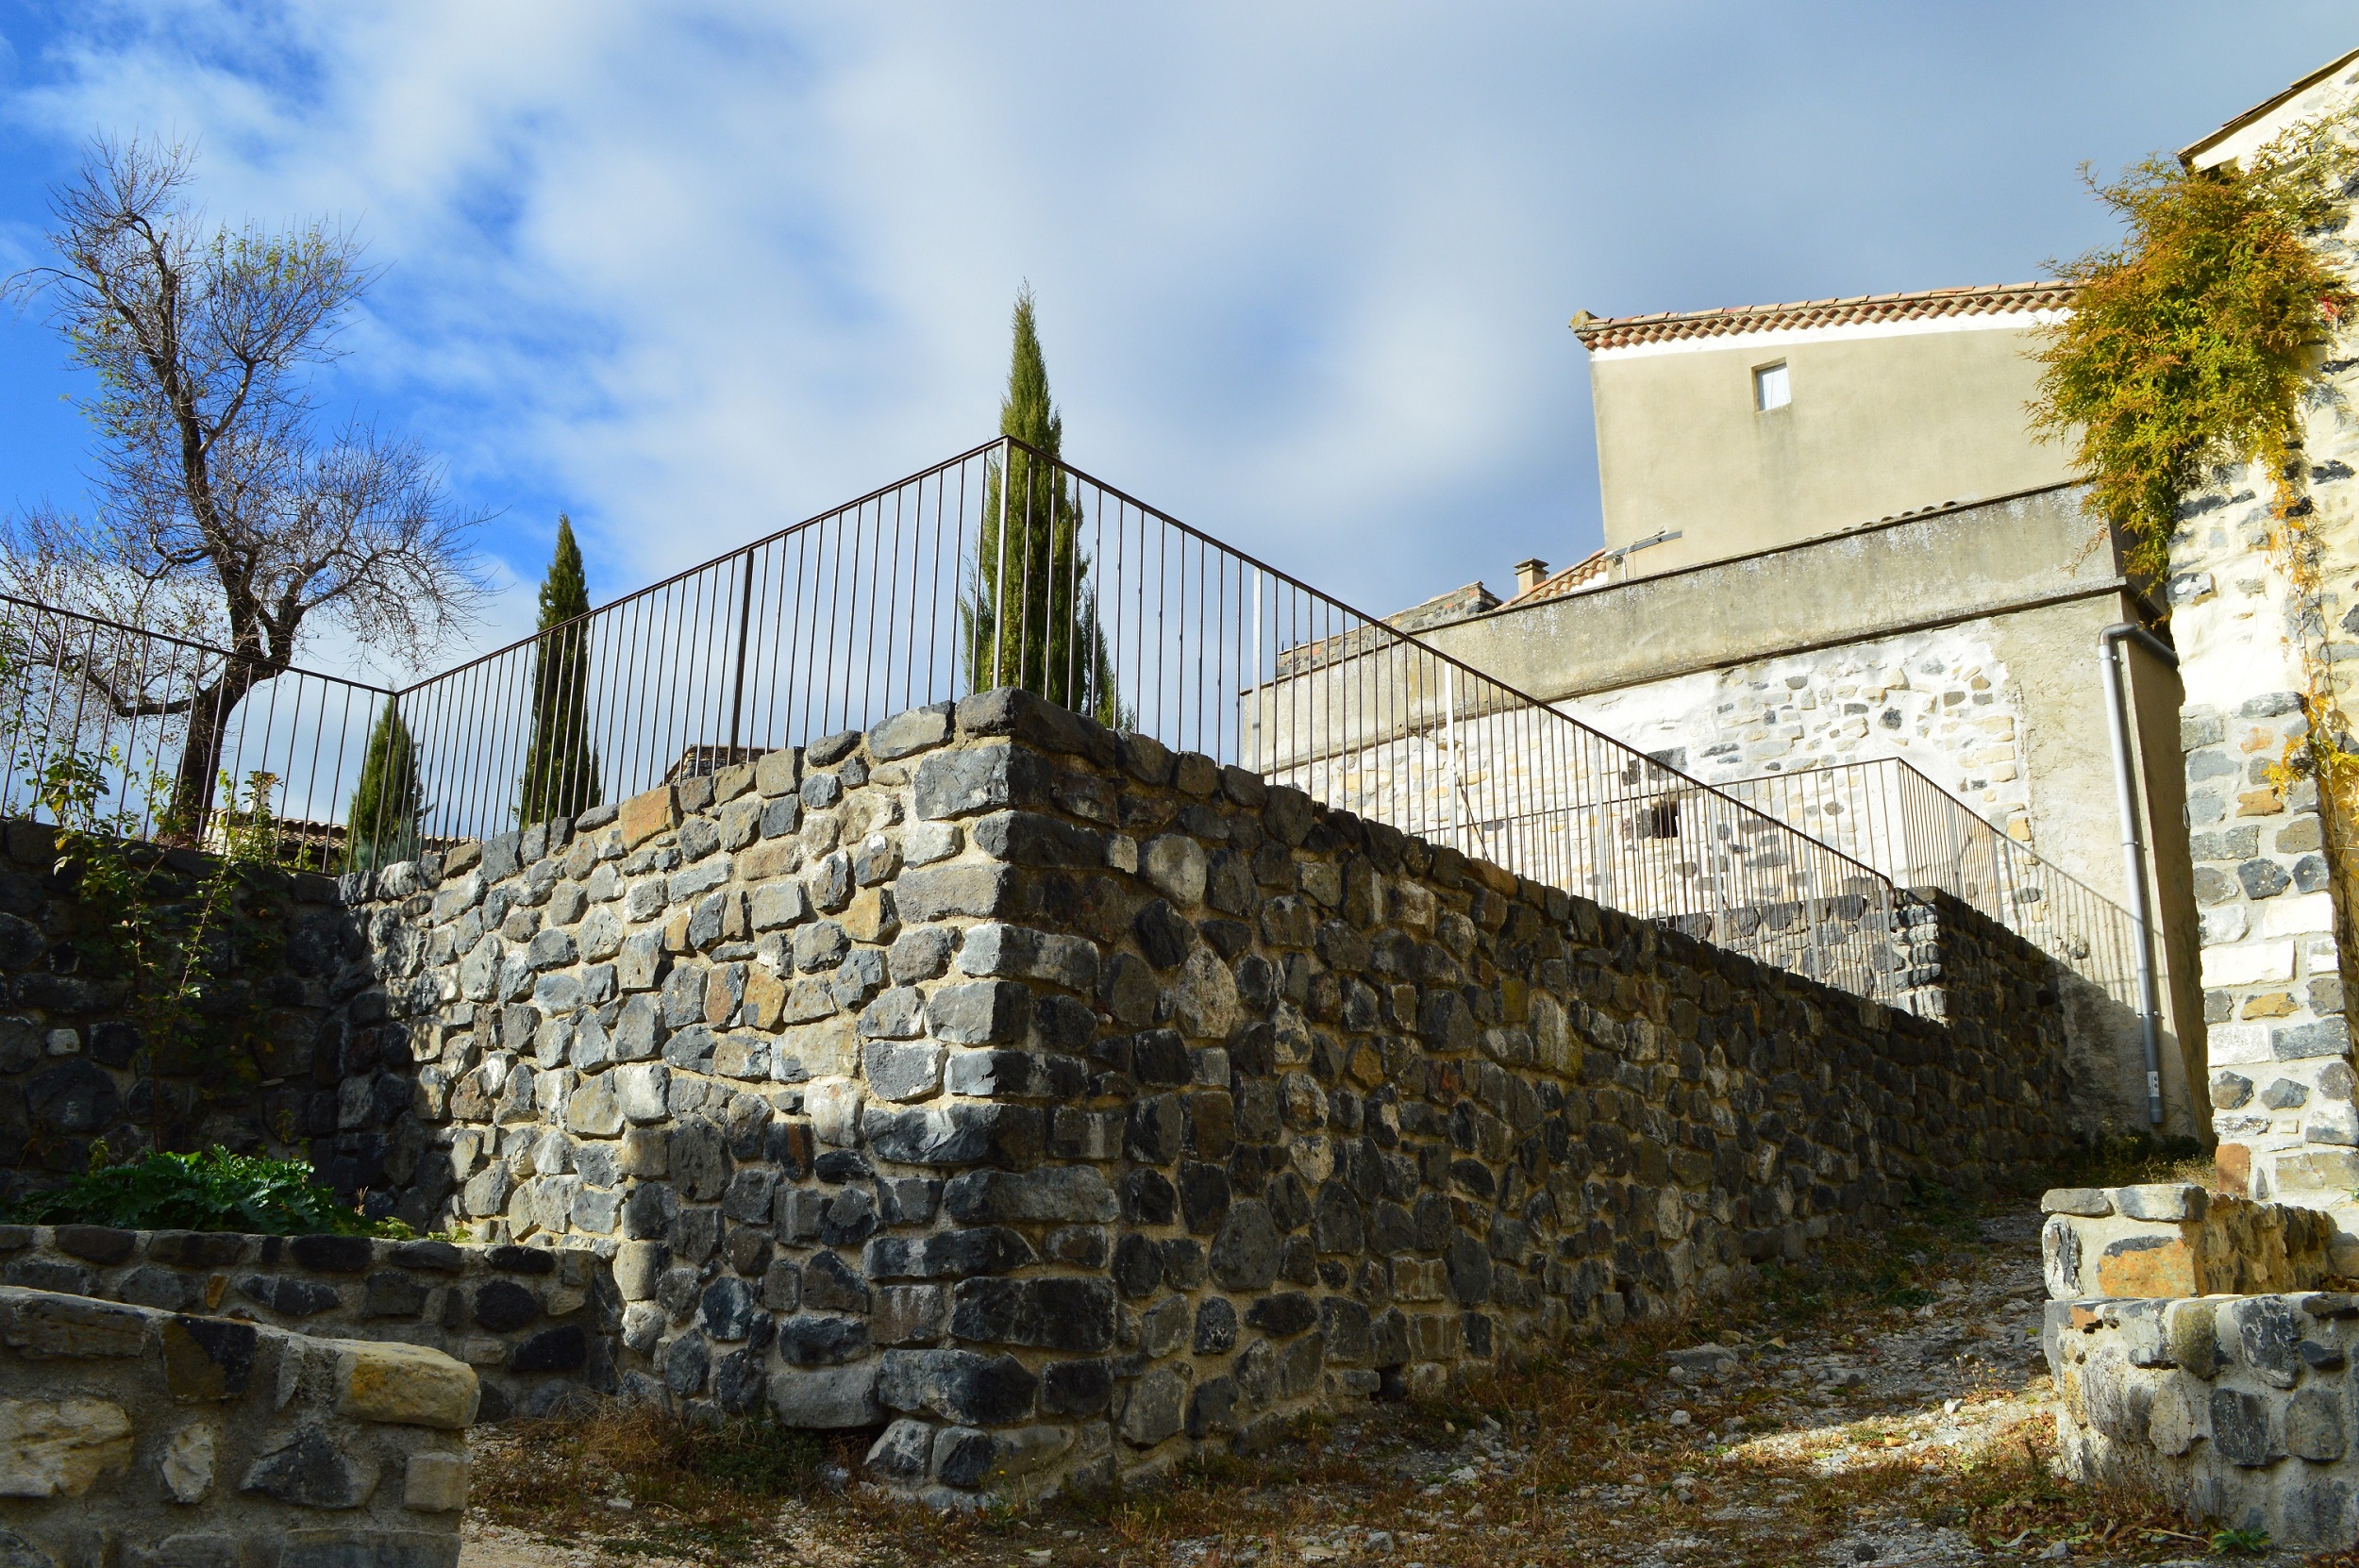 Parement en pierres de basalte devant un mur de soutènement en BA. Aménagement d'une place publique à Saint Pons